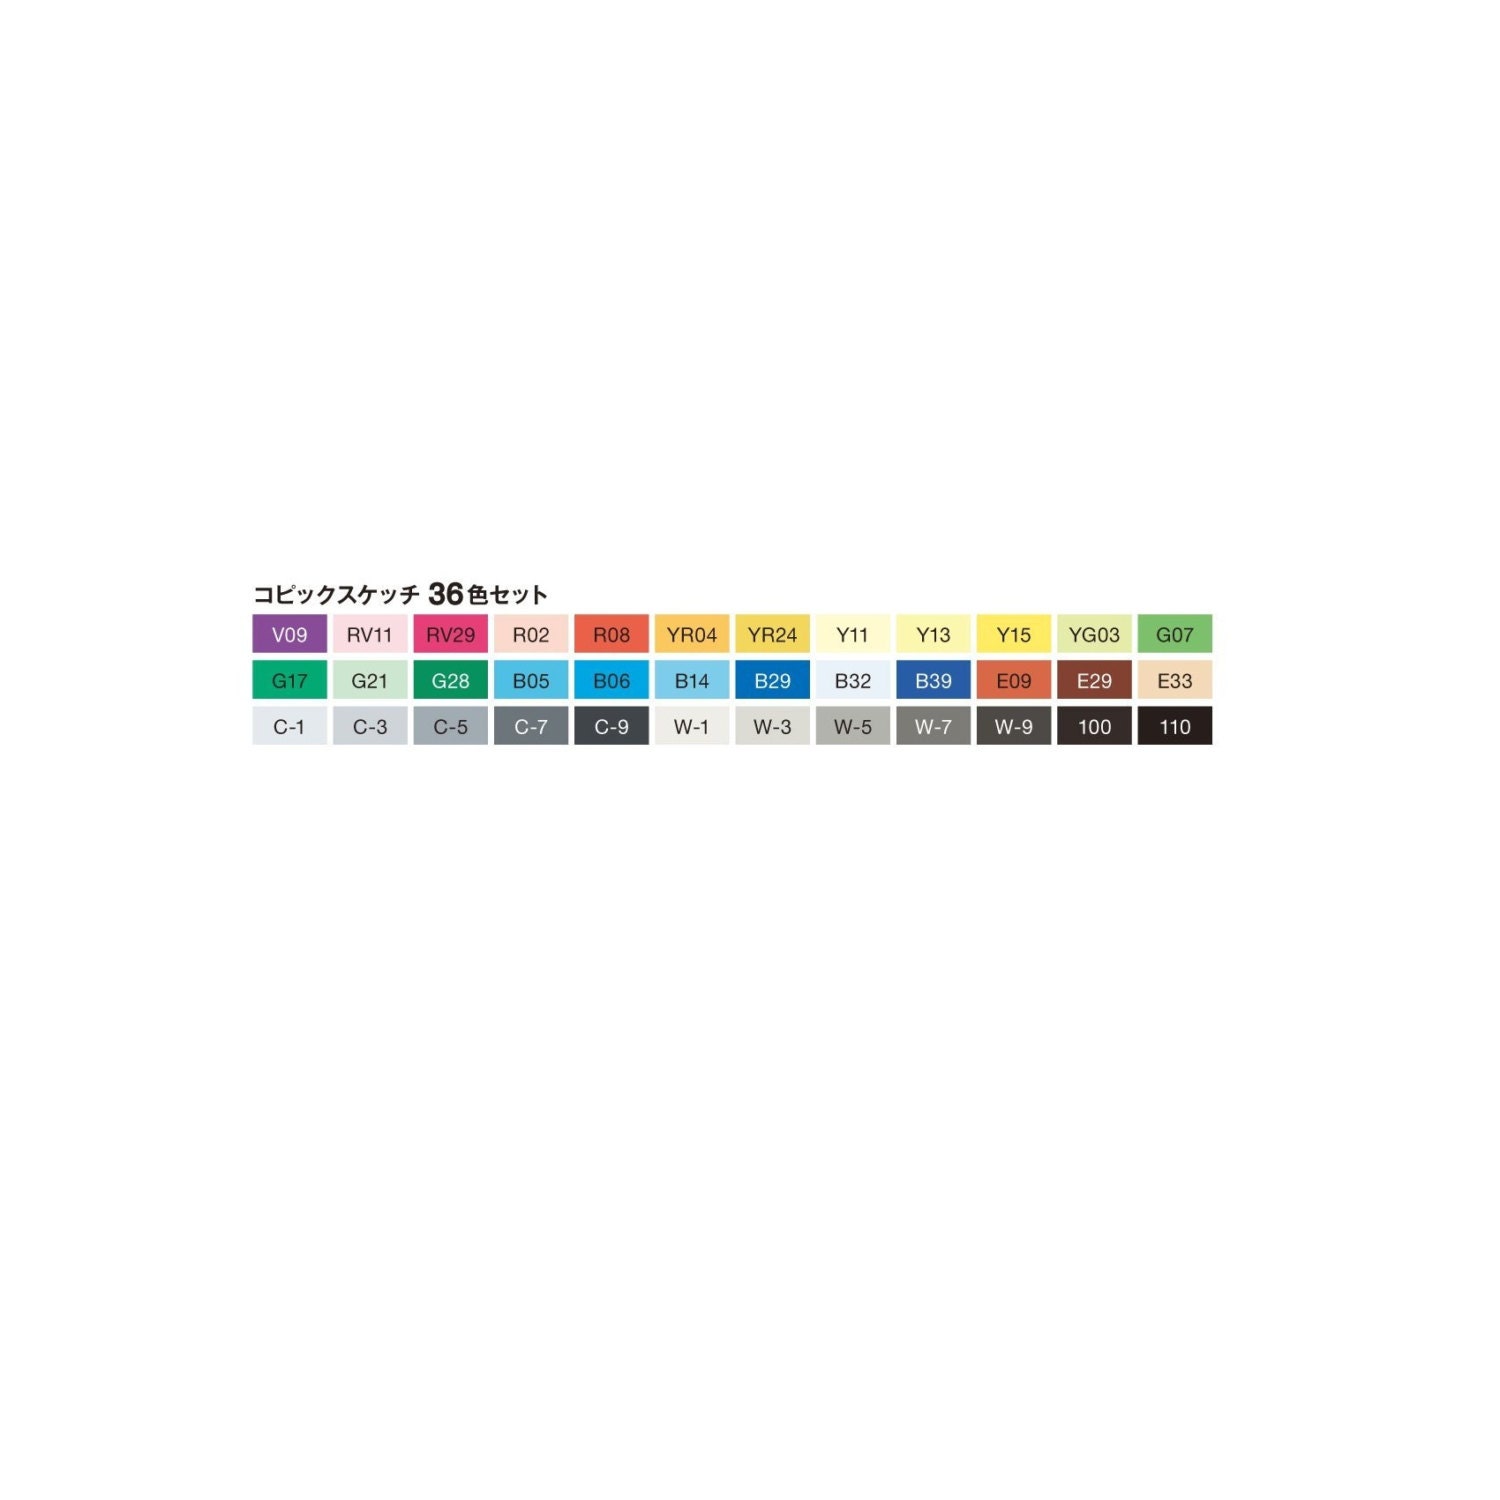 Copic Sketch Marker Set, 36 Colors - FLAX art & design